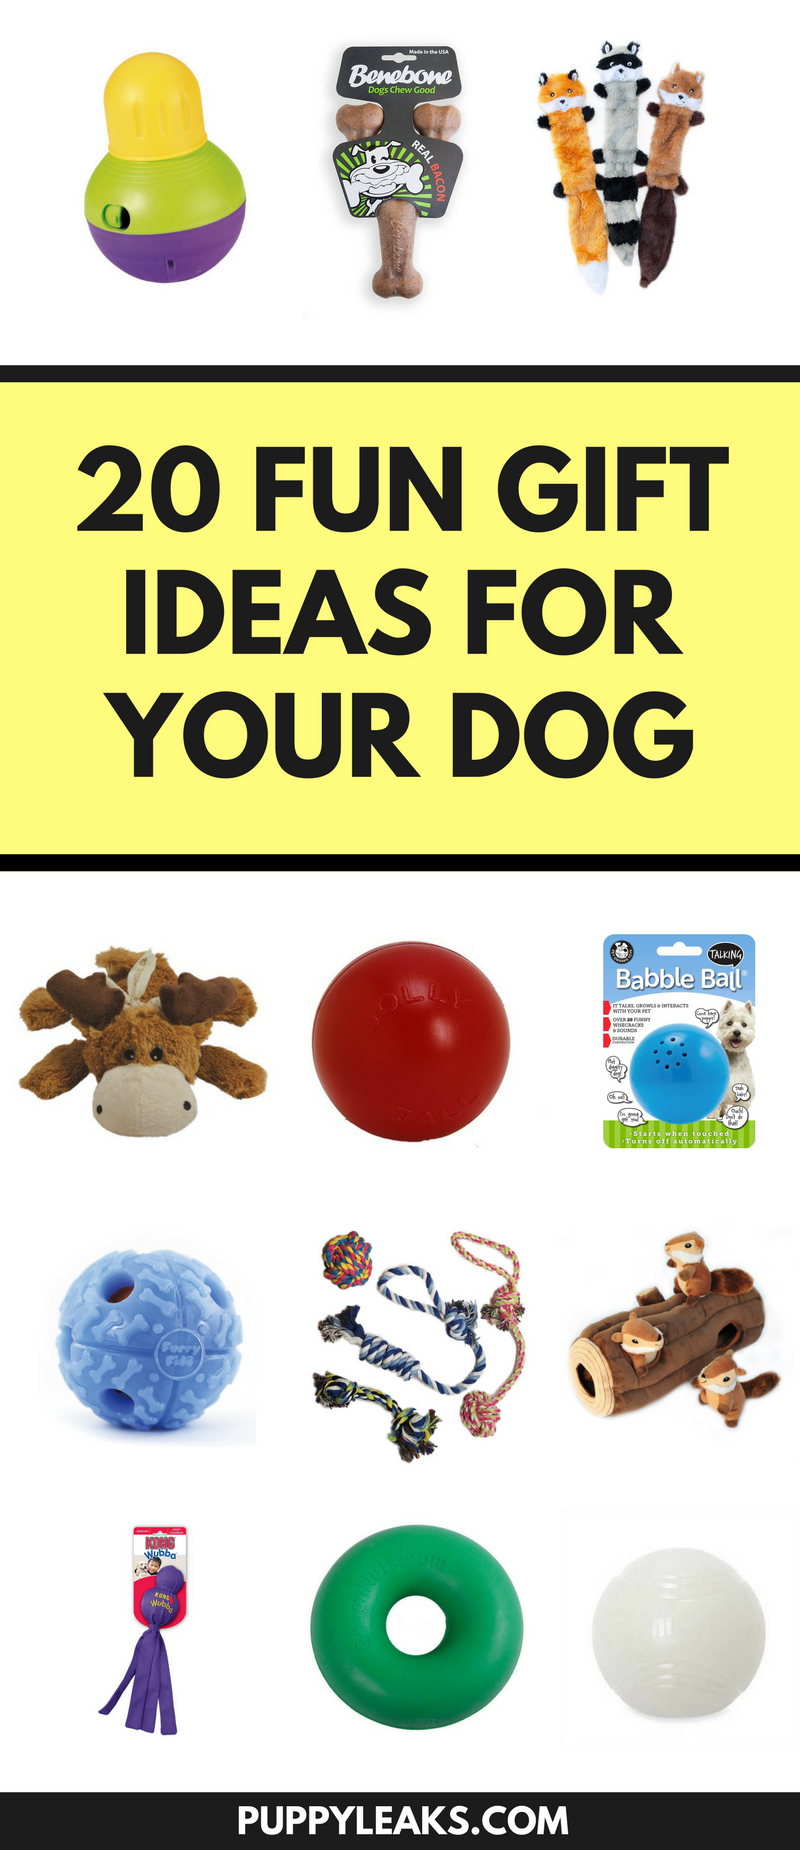 あなたの犬のための20の楽しいクリスマスプレゼントのアイデア 